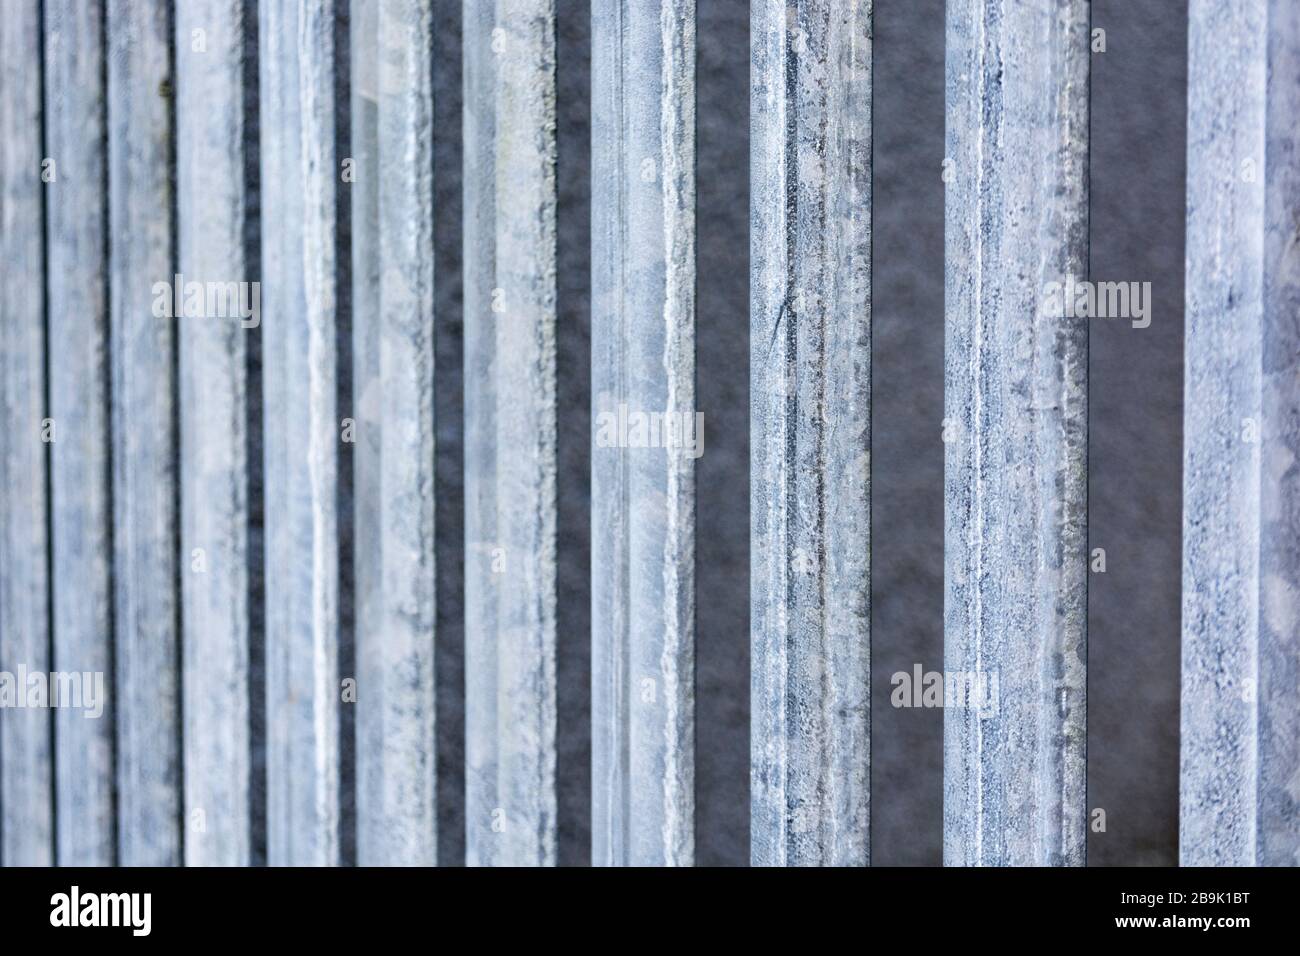 Fila de postes de vallado de acero galvanizado en la luz del sol. Para el muro fronterizo de México-Estados Unidos, el movimiento restringido, mirar más allá, la barrera física, la prisión, la encierro Foto de stock